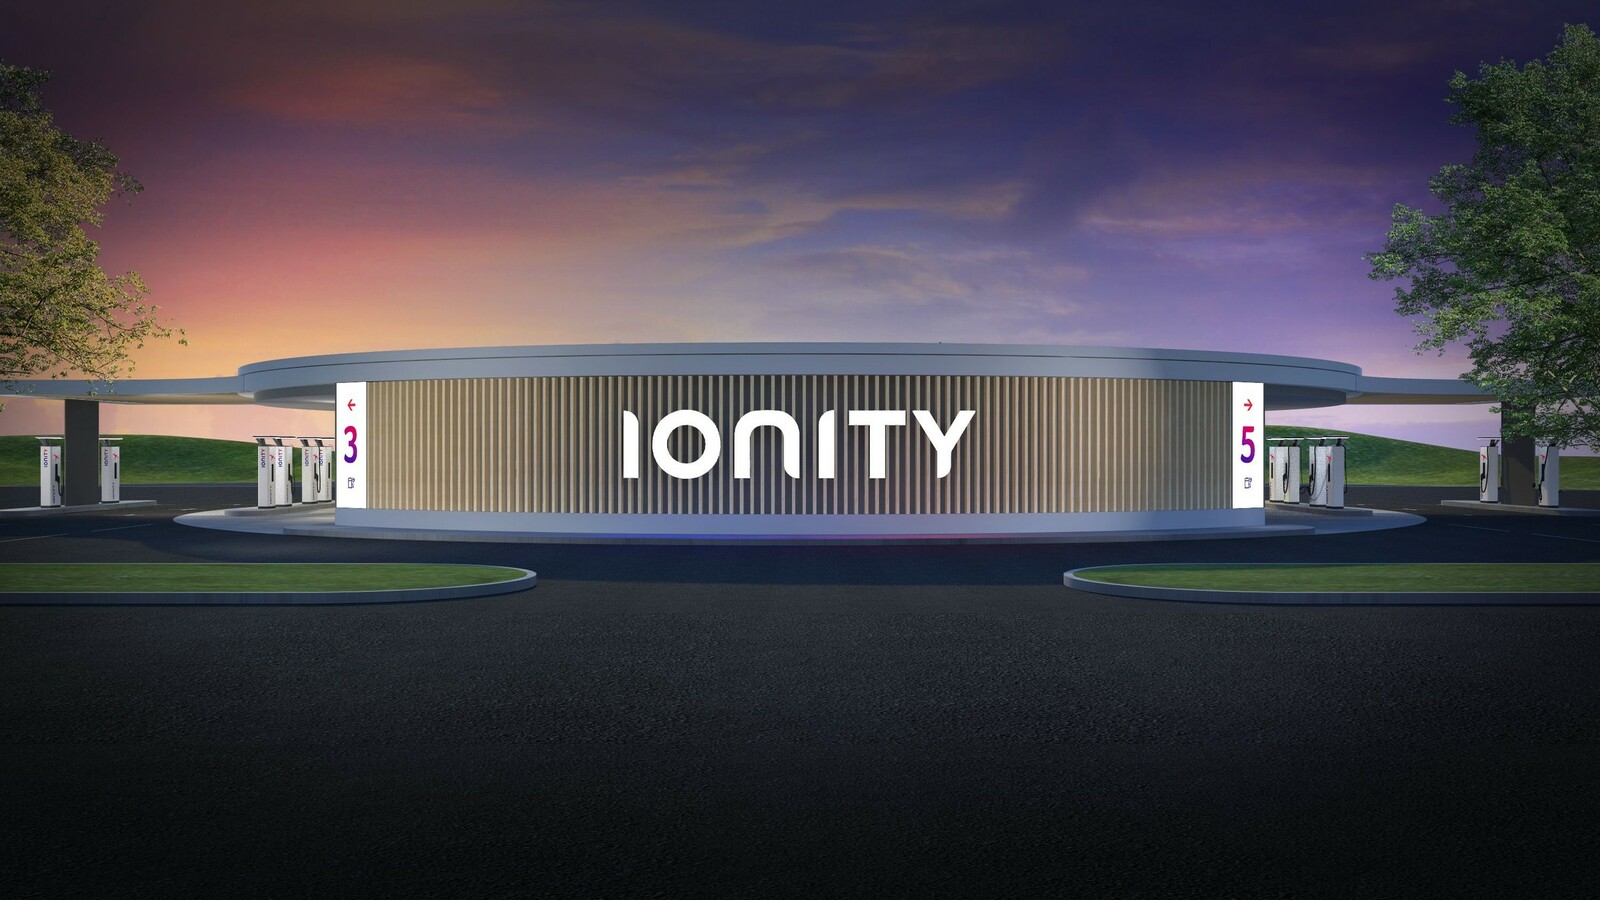 Eine Oase für E-Auto-Fahrer?: Ionity plant Ladeparks unter dem Arbeitstitel „Oasis“, die unter anderem über Einkaufsläden und Restaurants verfügen sollen.